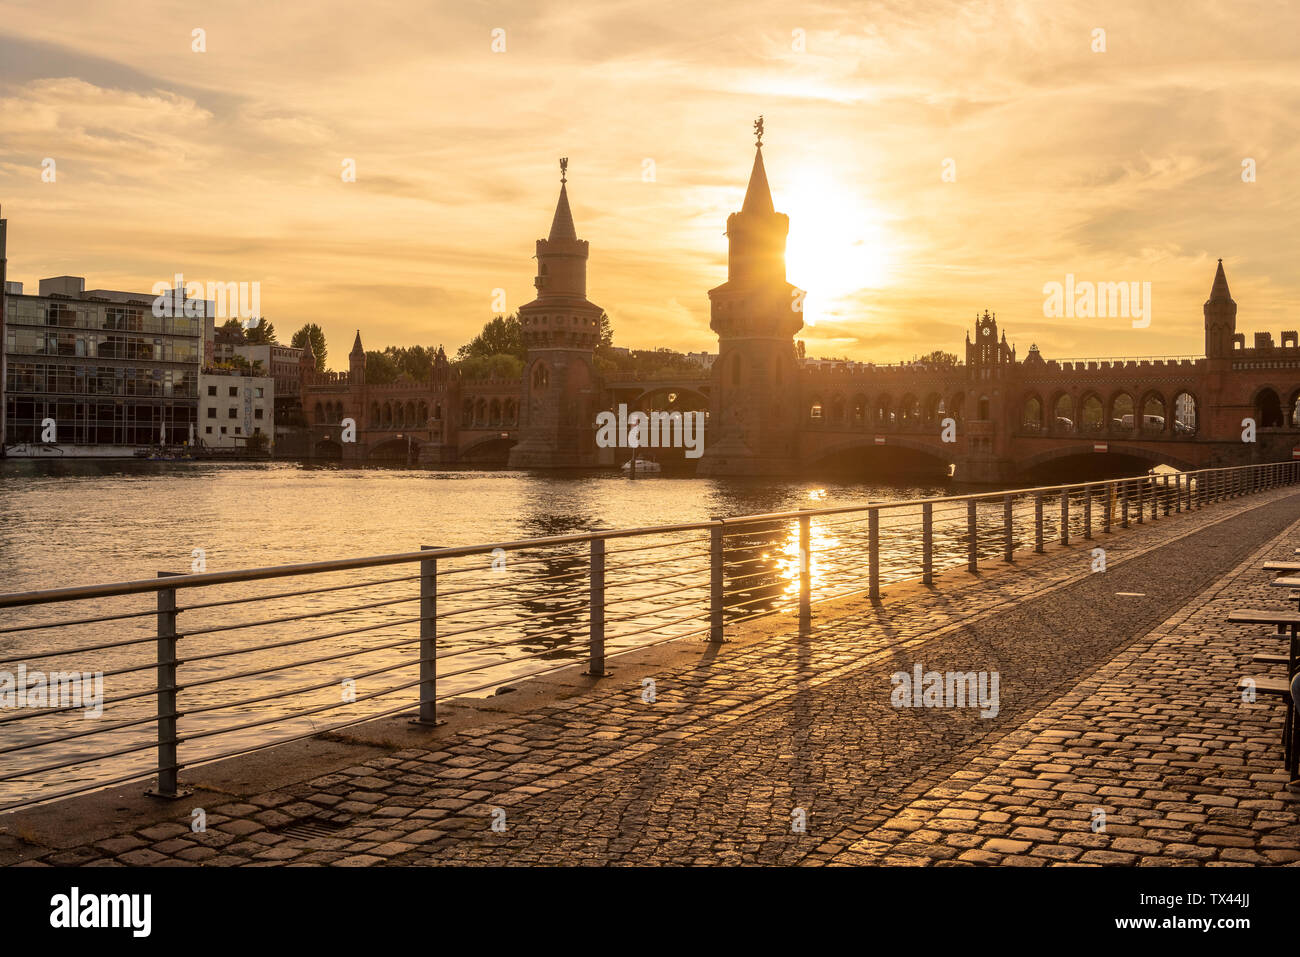 Germania, Berlino-friedrichshain, vista da ponte Oberbaum di sunrise Foto Stock